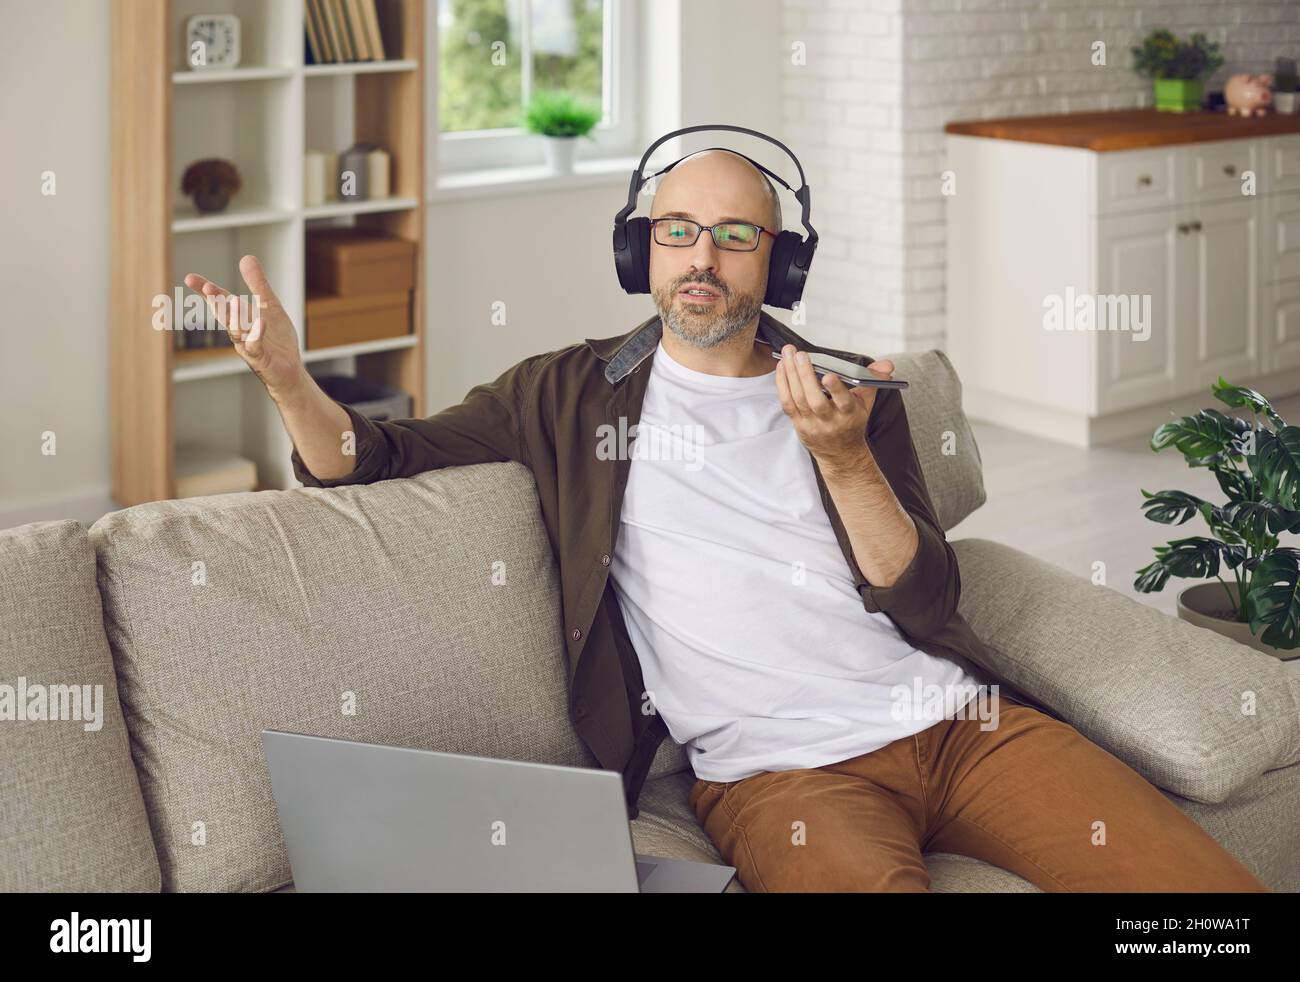 Homme enregistrant un message vocal ou parlant sur un haut-parleur lorsqu'il est assis sur un canapé à la maison Banque D'Images